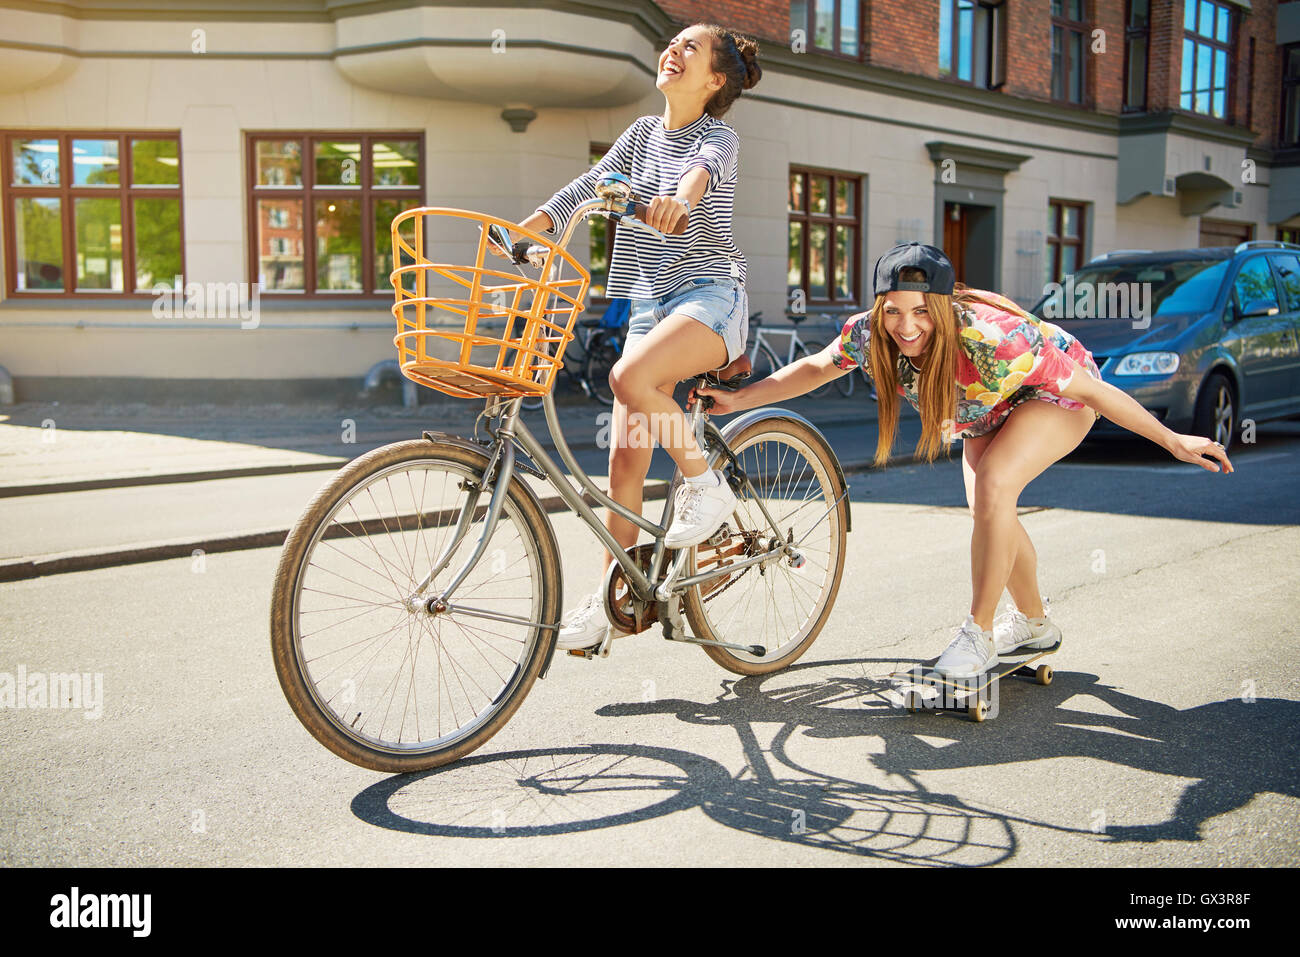 Lachend trendige junge Frau auf einem Skateboard entlang einer städtischen Straße abgeschleppt von ihrem Freund auf einem Fahrrad, Stockfoto